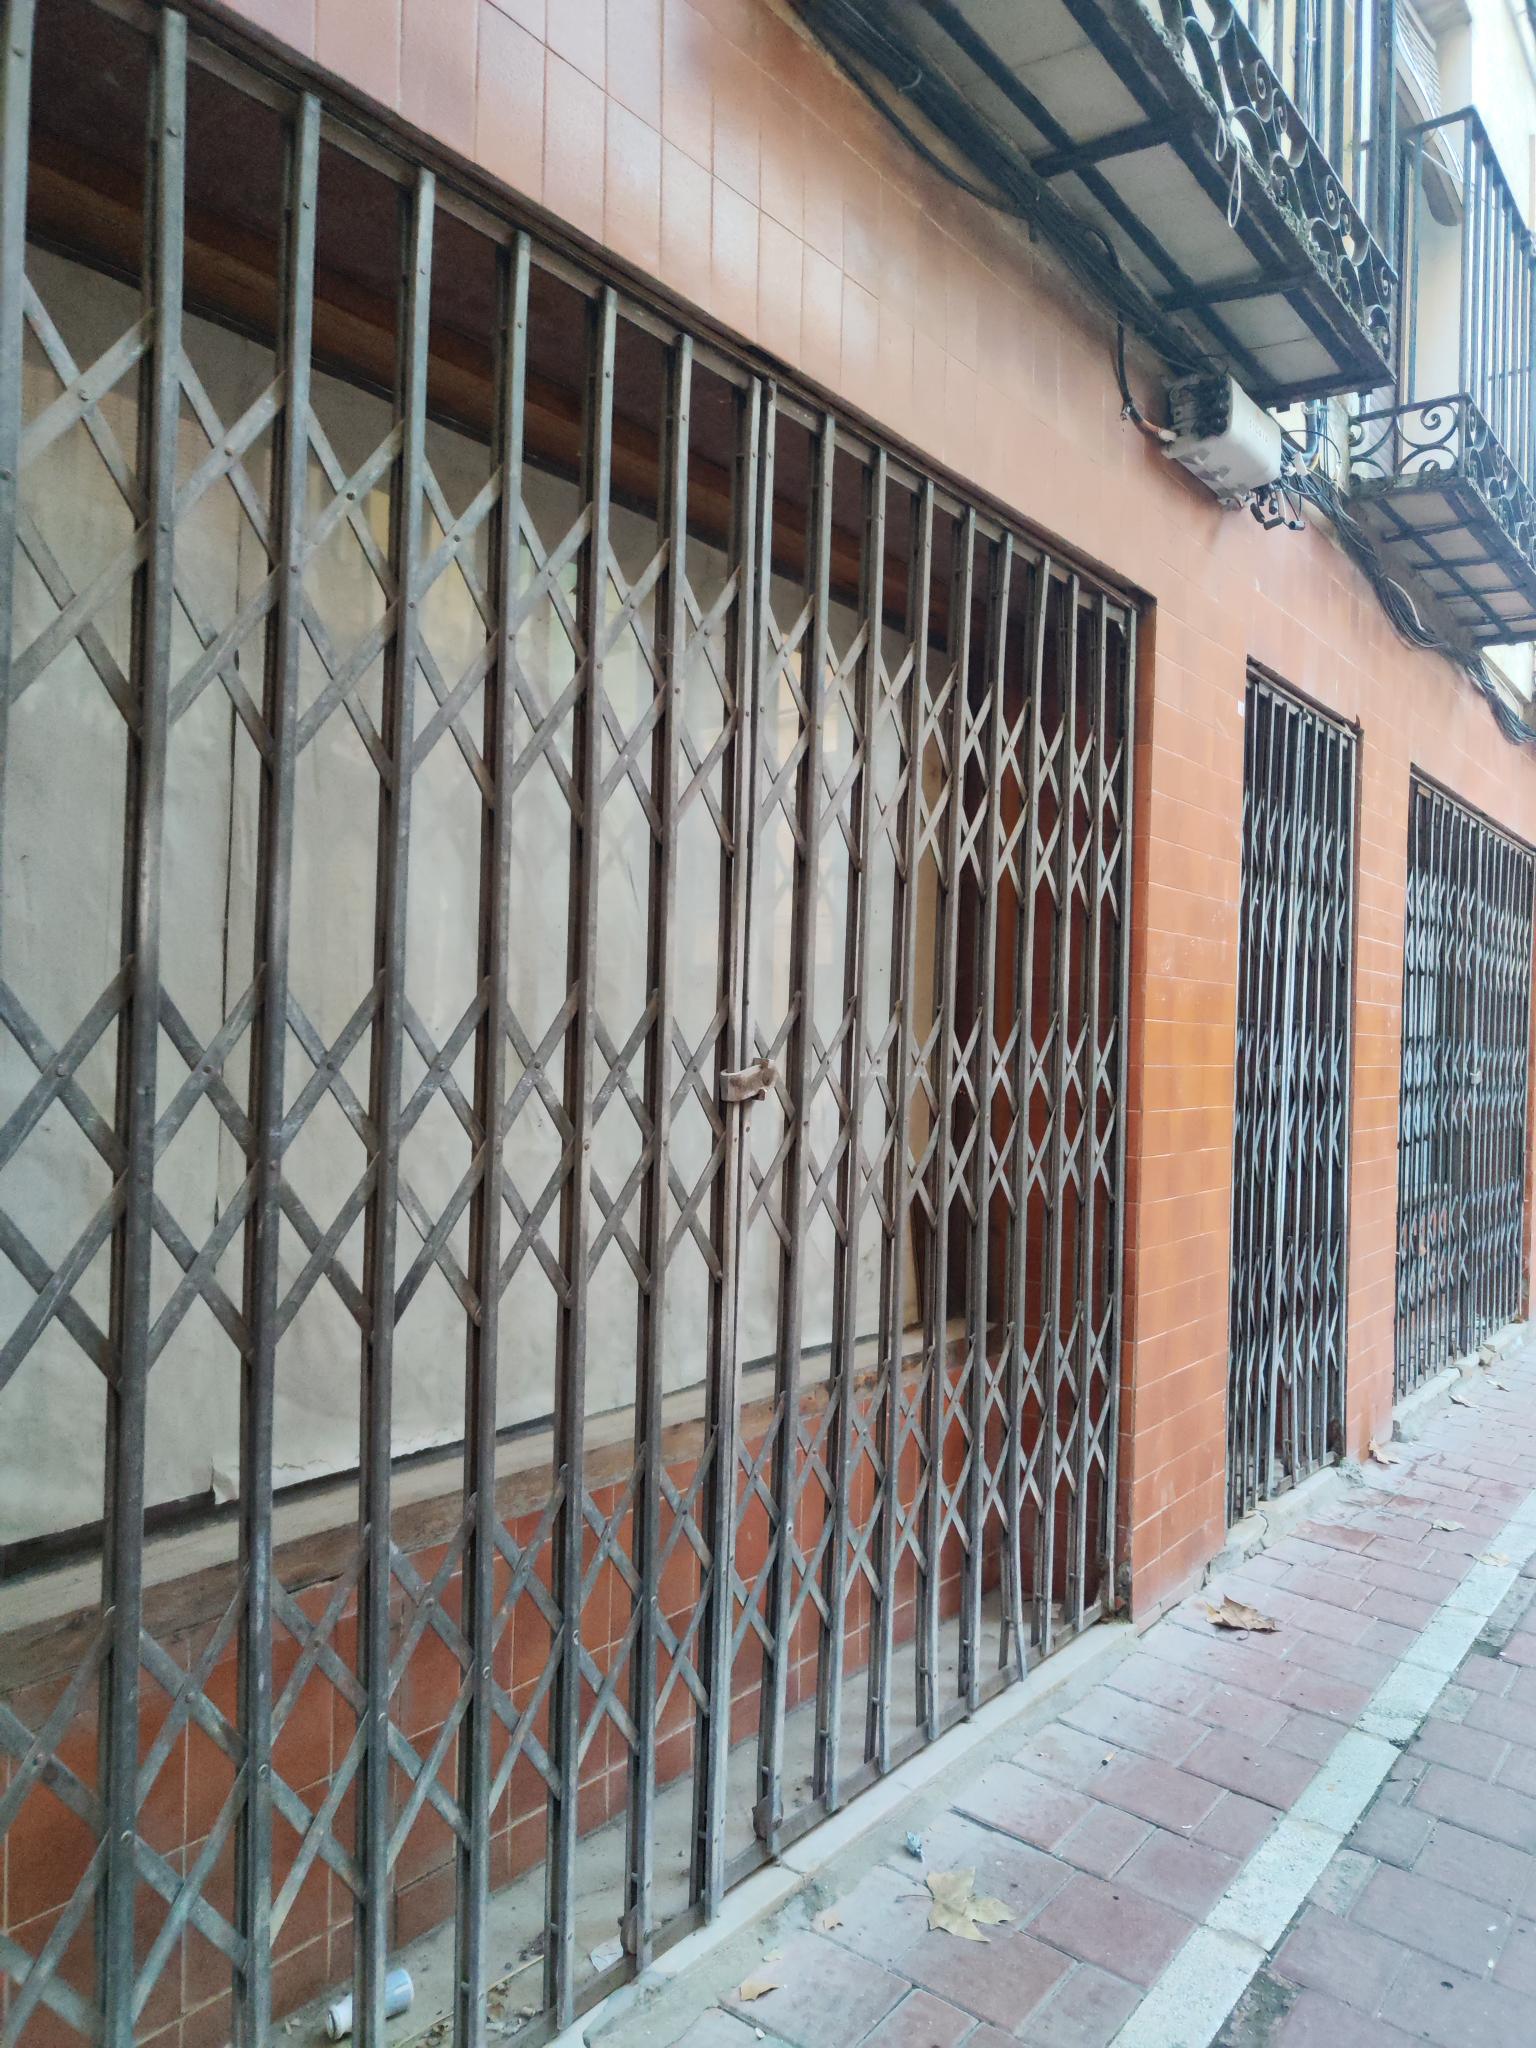 Locales y negocios cerrados en el casco antiguo de Molina de Aragón